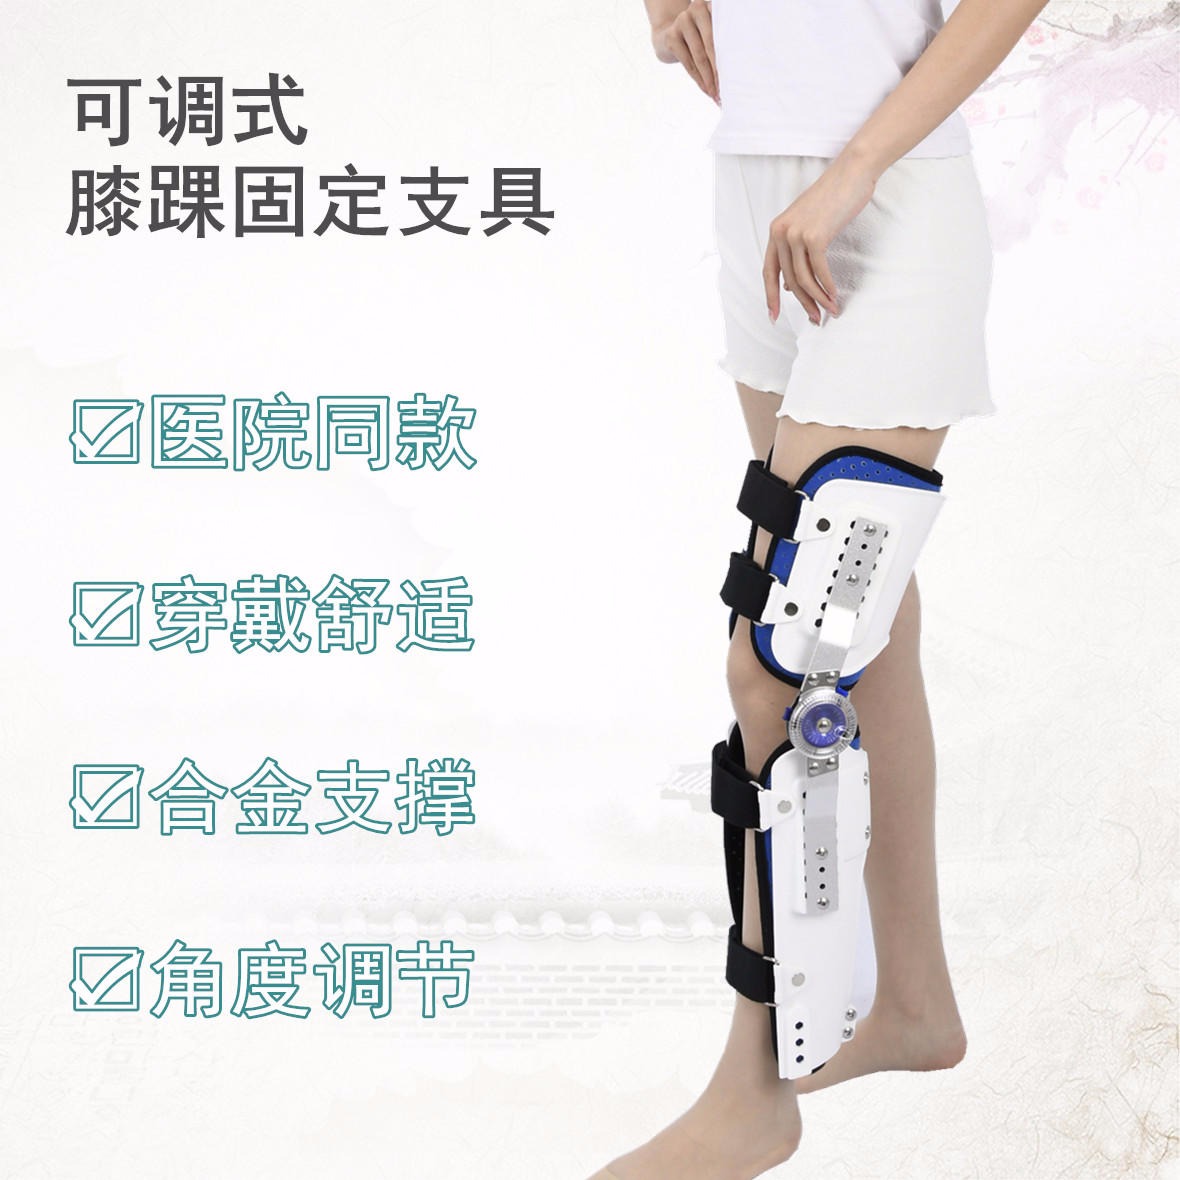 康奇医疗厂家可调膝踝护具膝关节截瘫行走固定支具股骨骨折护具胯部术后固定护具